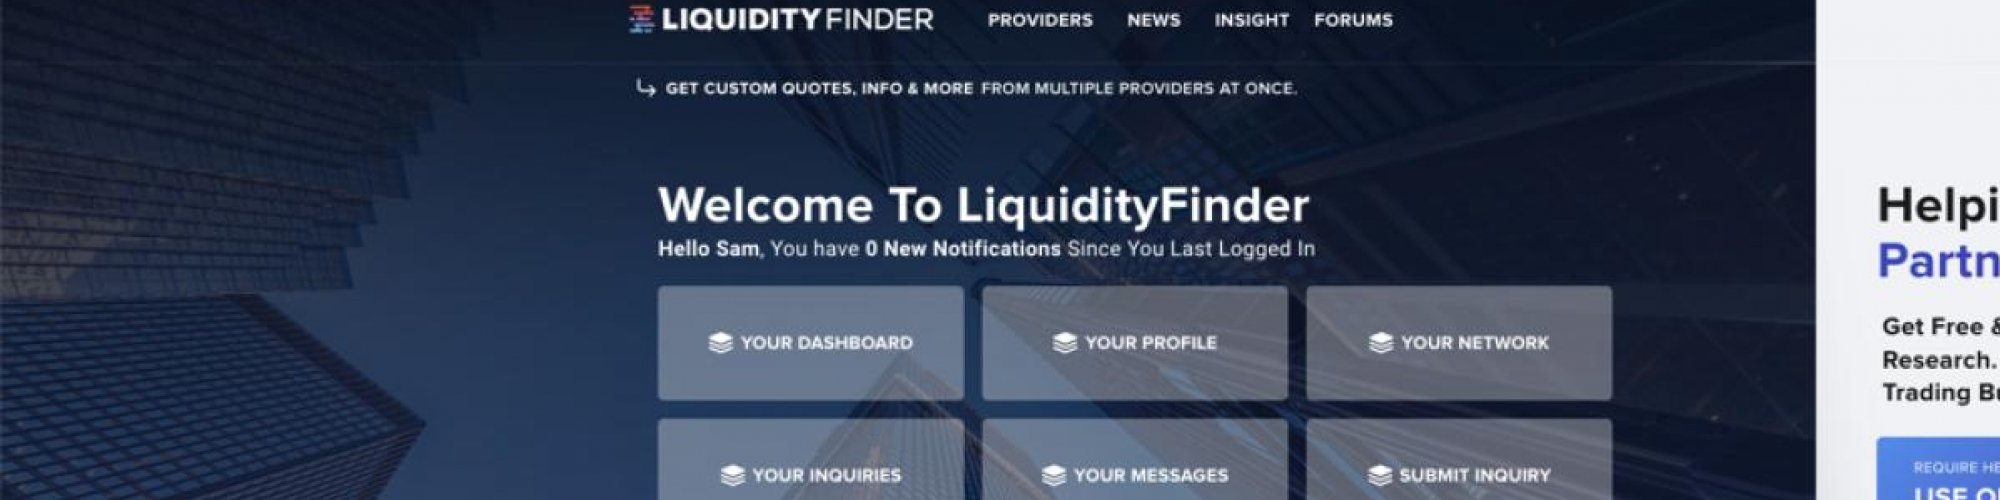 LiquidityFinder